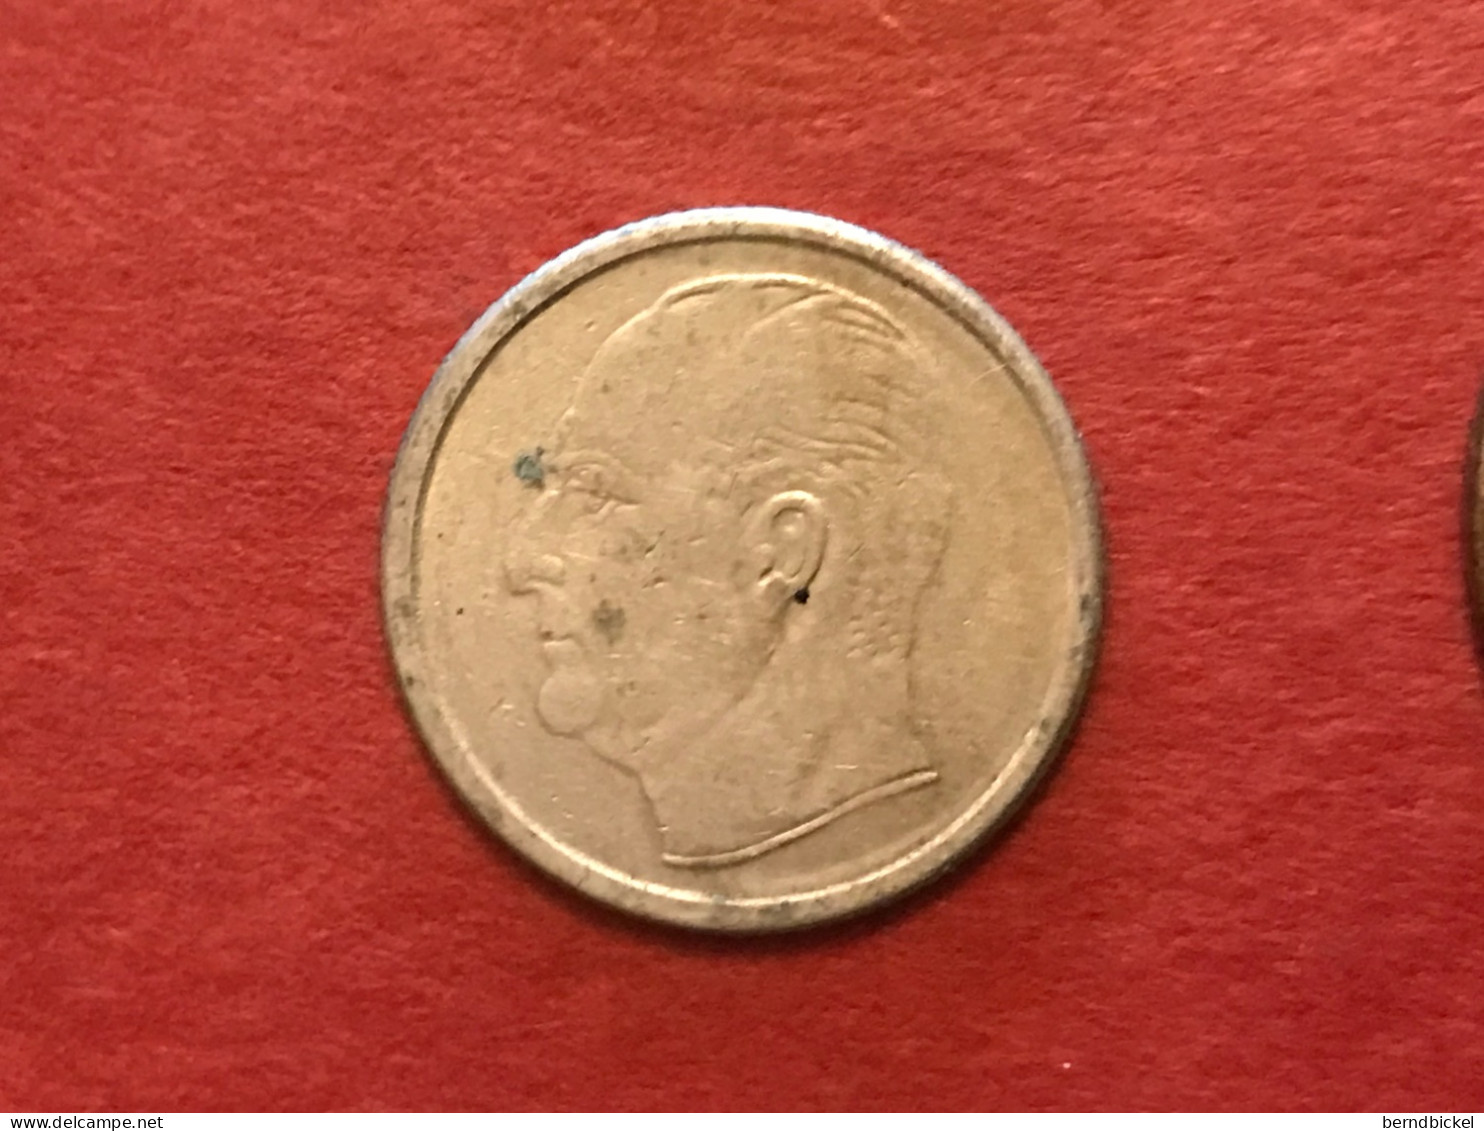 Münze Münzen Umlaufmünze Norwegen 50 Öre 1968 - Norway